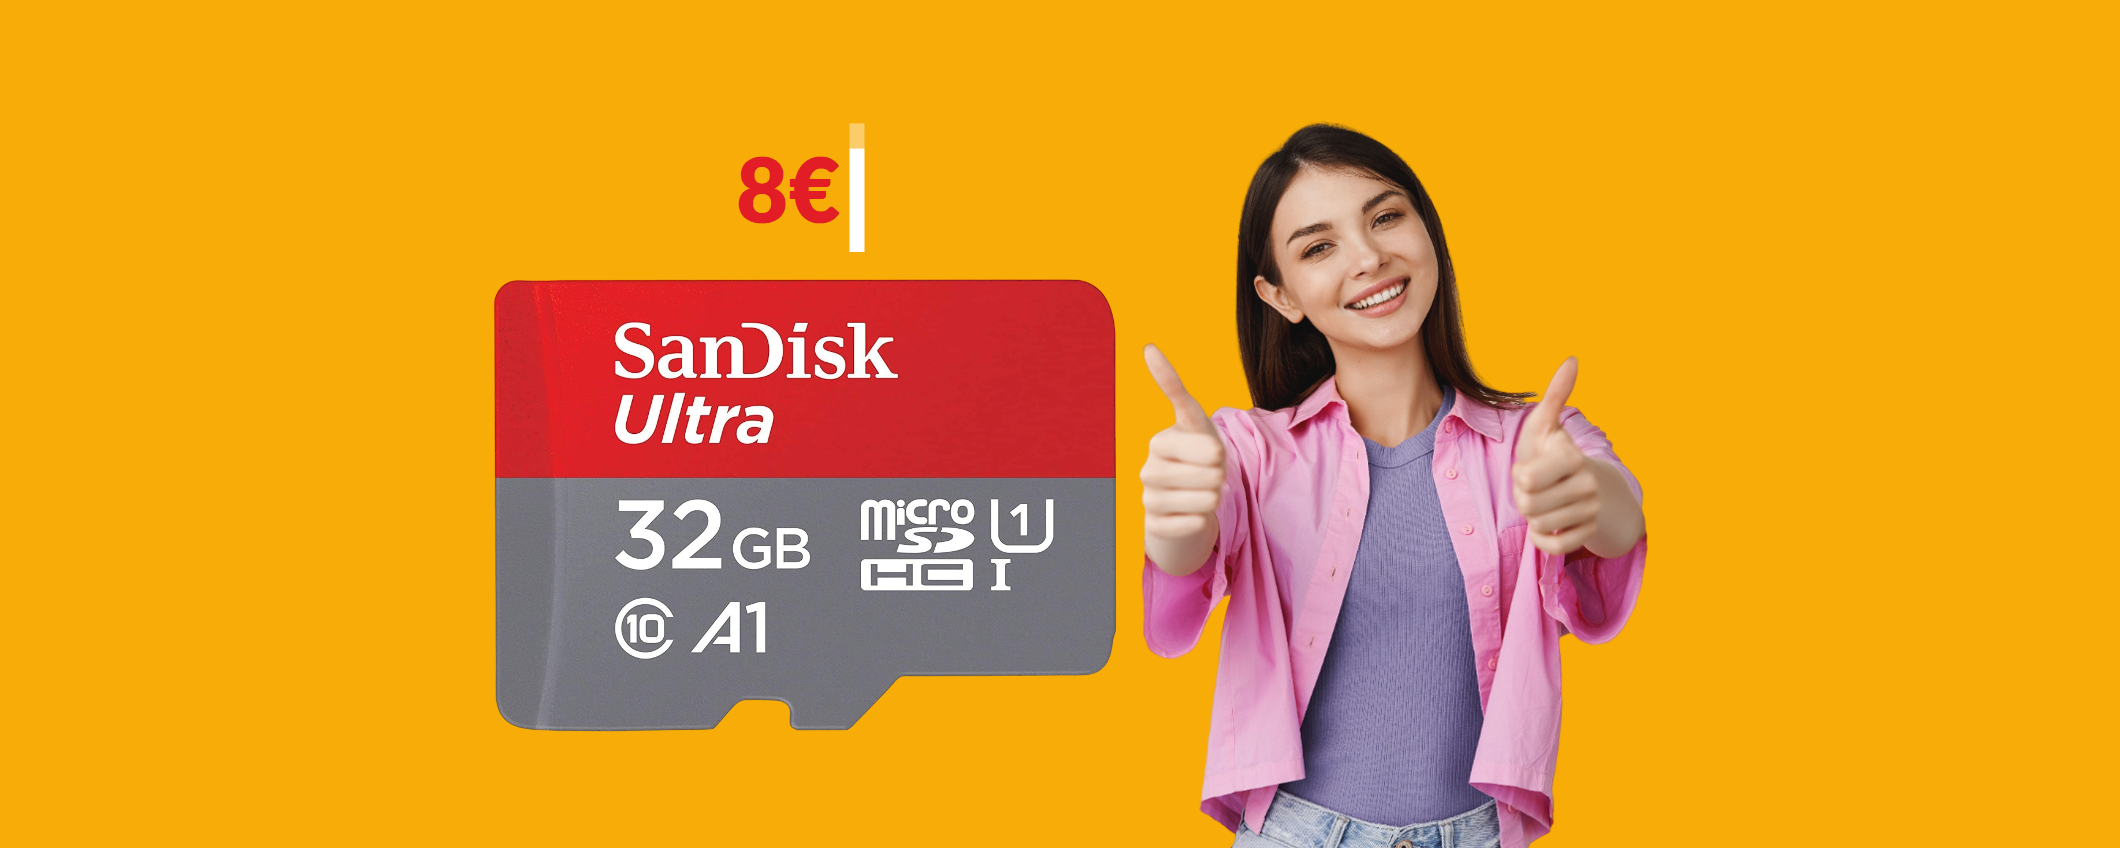 MicroSD 32GB SanDisk a soli 8€: fai rinascere il tuo smartphone